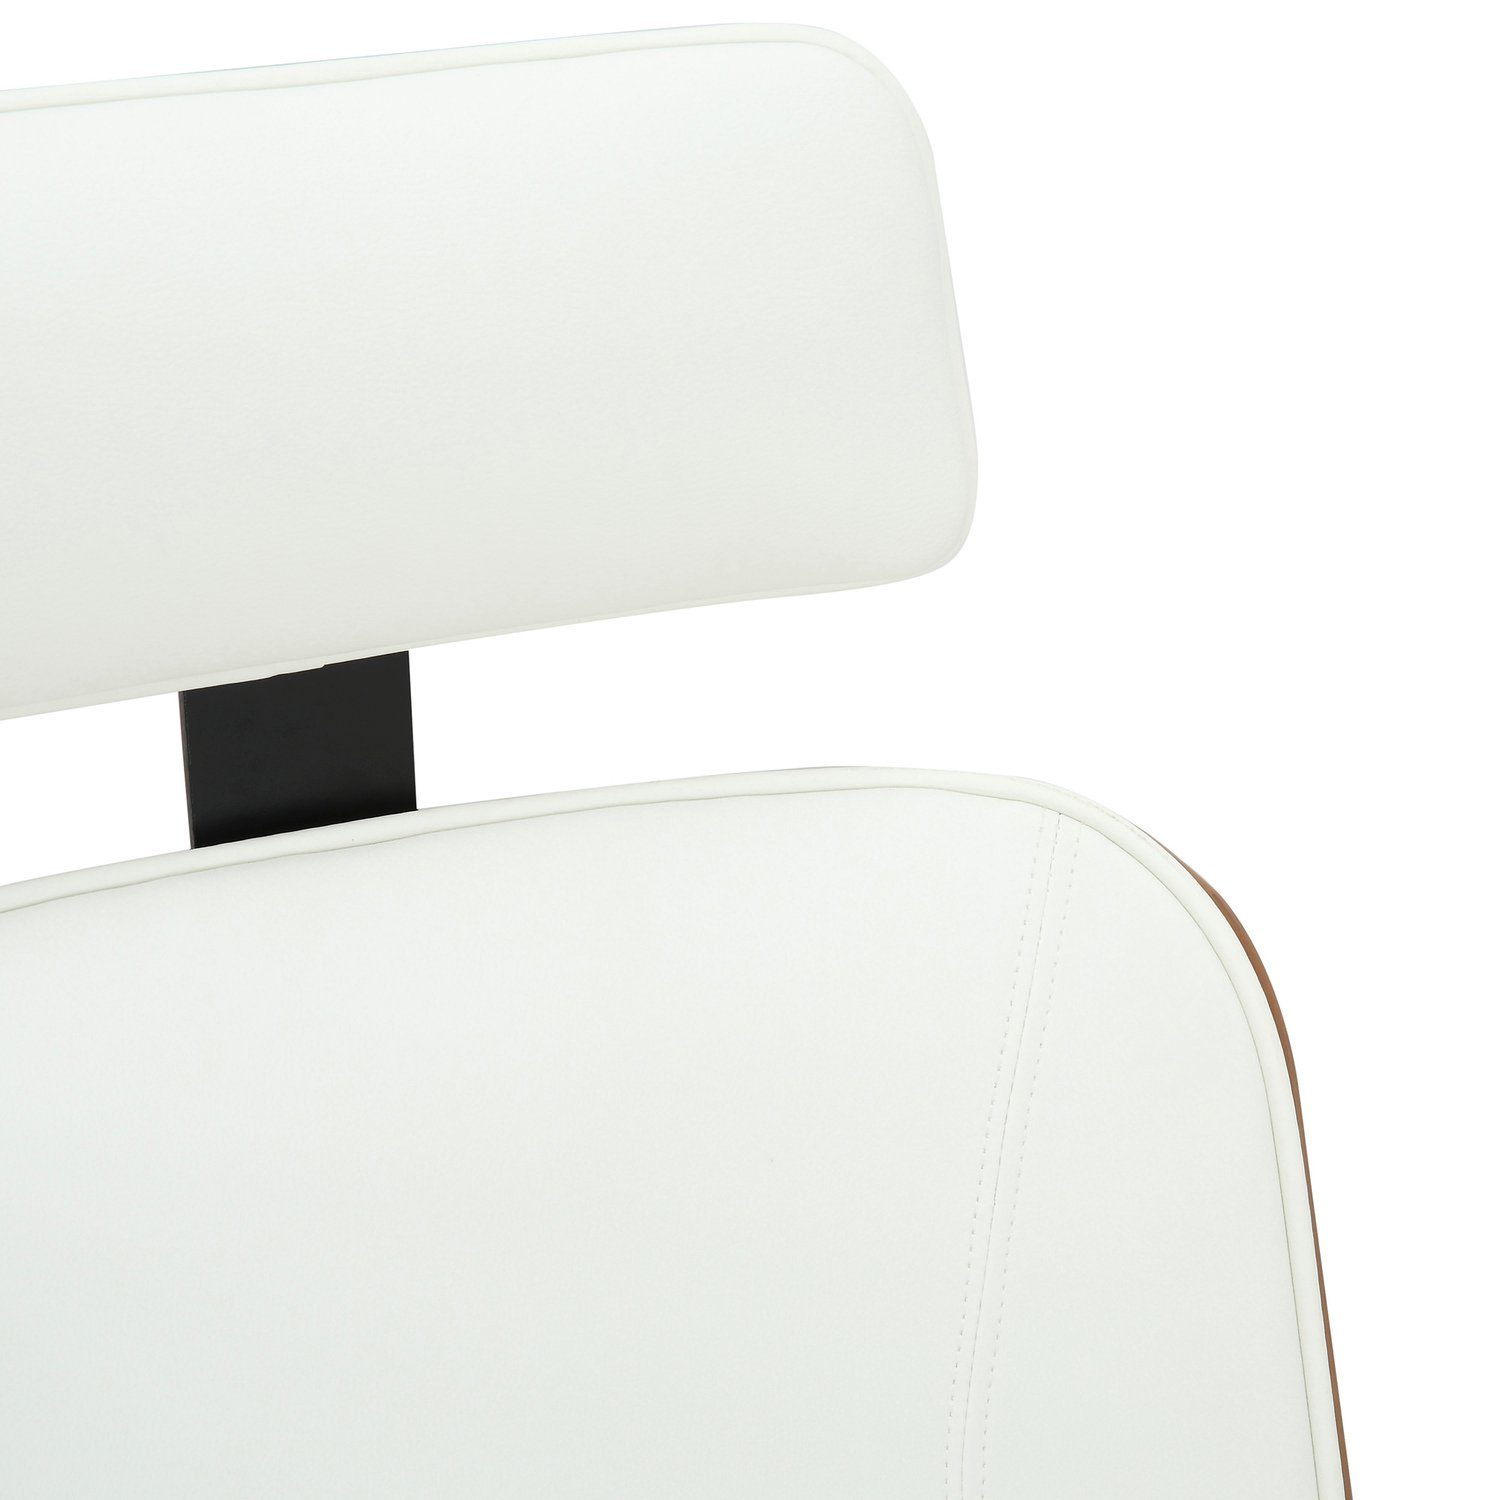 Bürostuhl mit - TPFLiving Kunstleder Metall bequemer 360° Daytona Rückenlehne Gestell: XXL), höhenverstellbar Chefsessel, Drehstuhl, (Schreibtischstuhl, und - walnuss/weiß chrom Bürostuhl drehbar Sitzfläche: